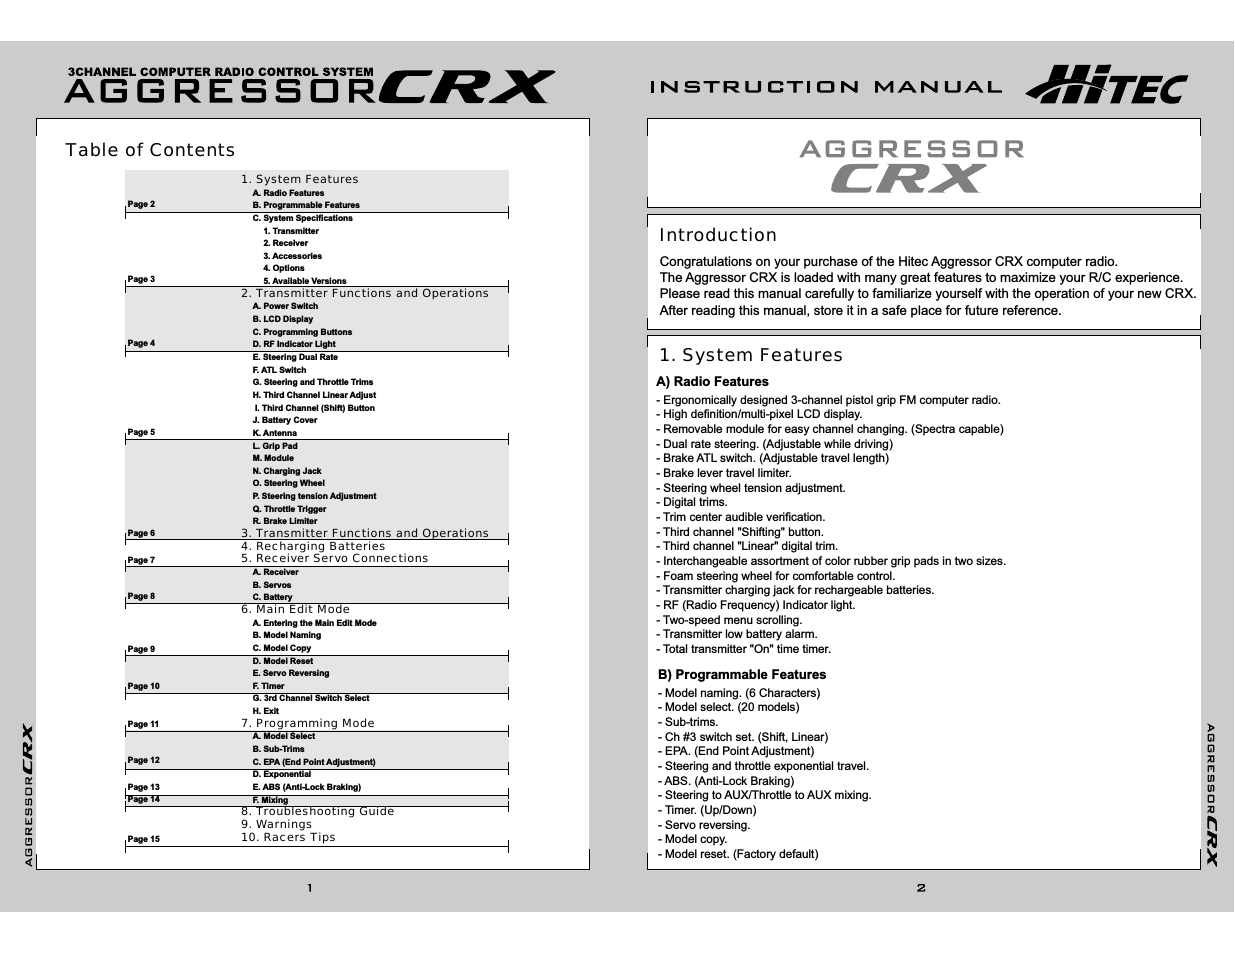 Aggressor CRX